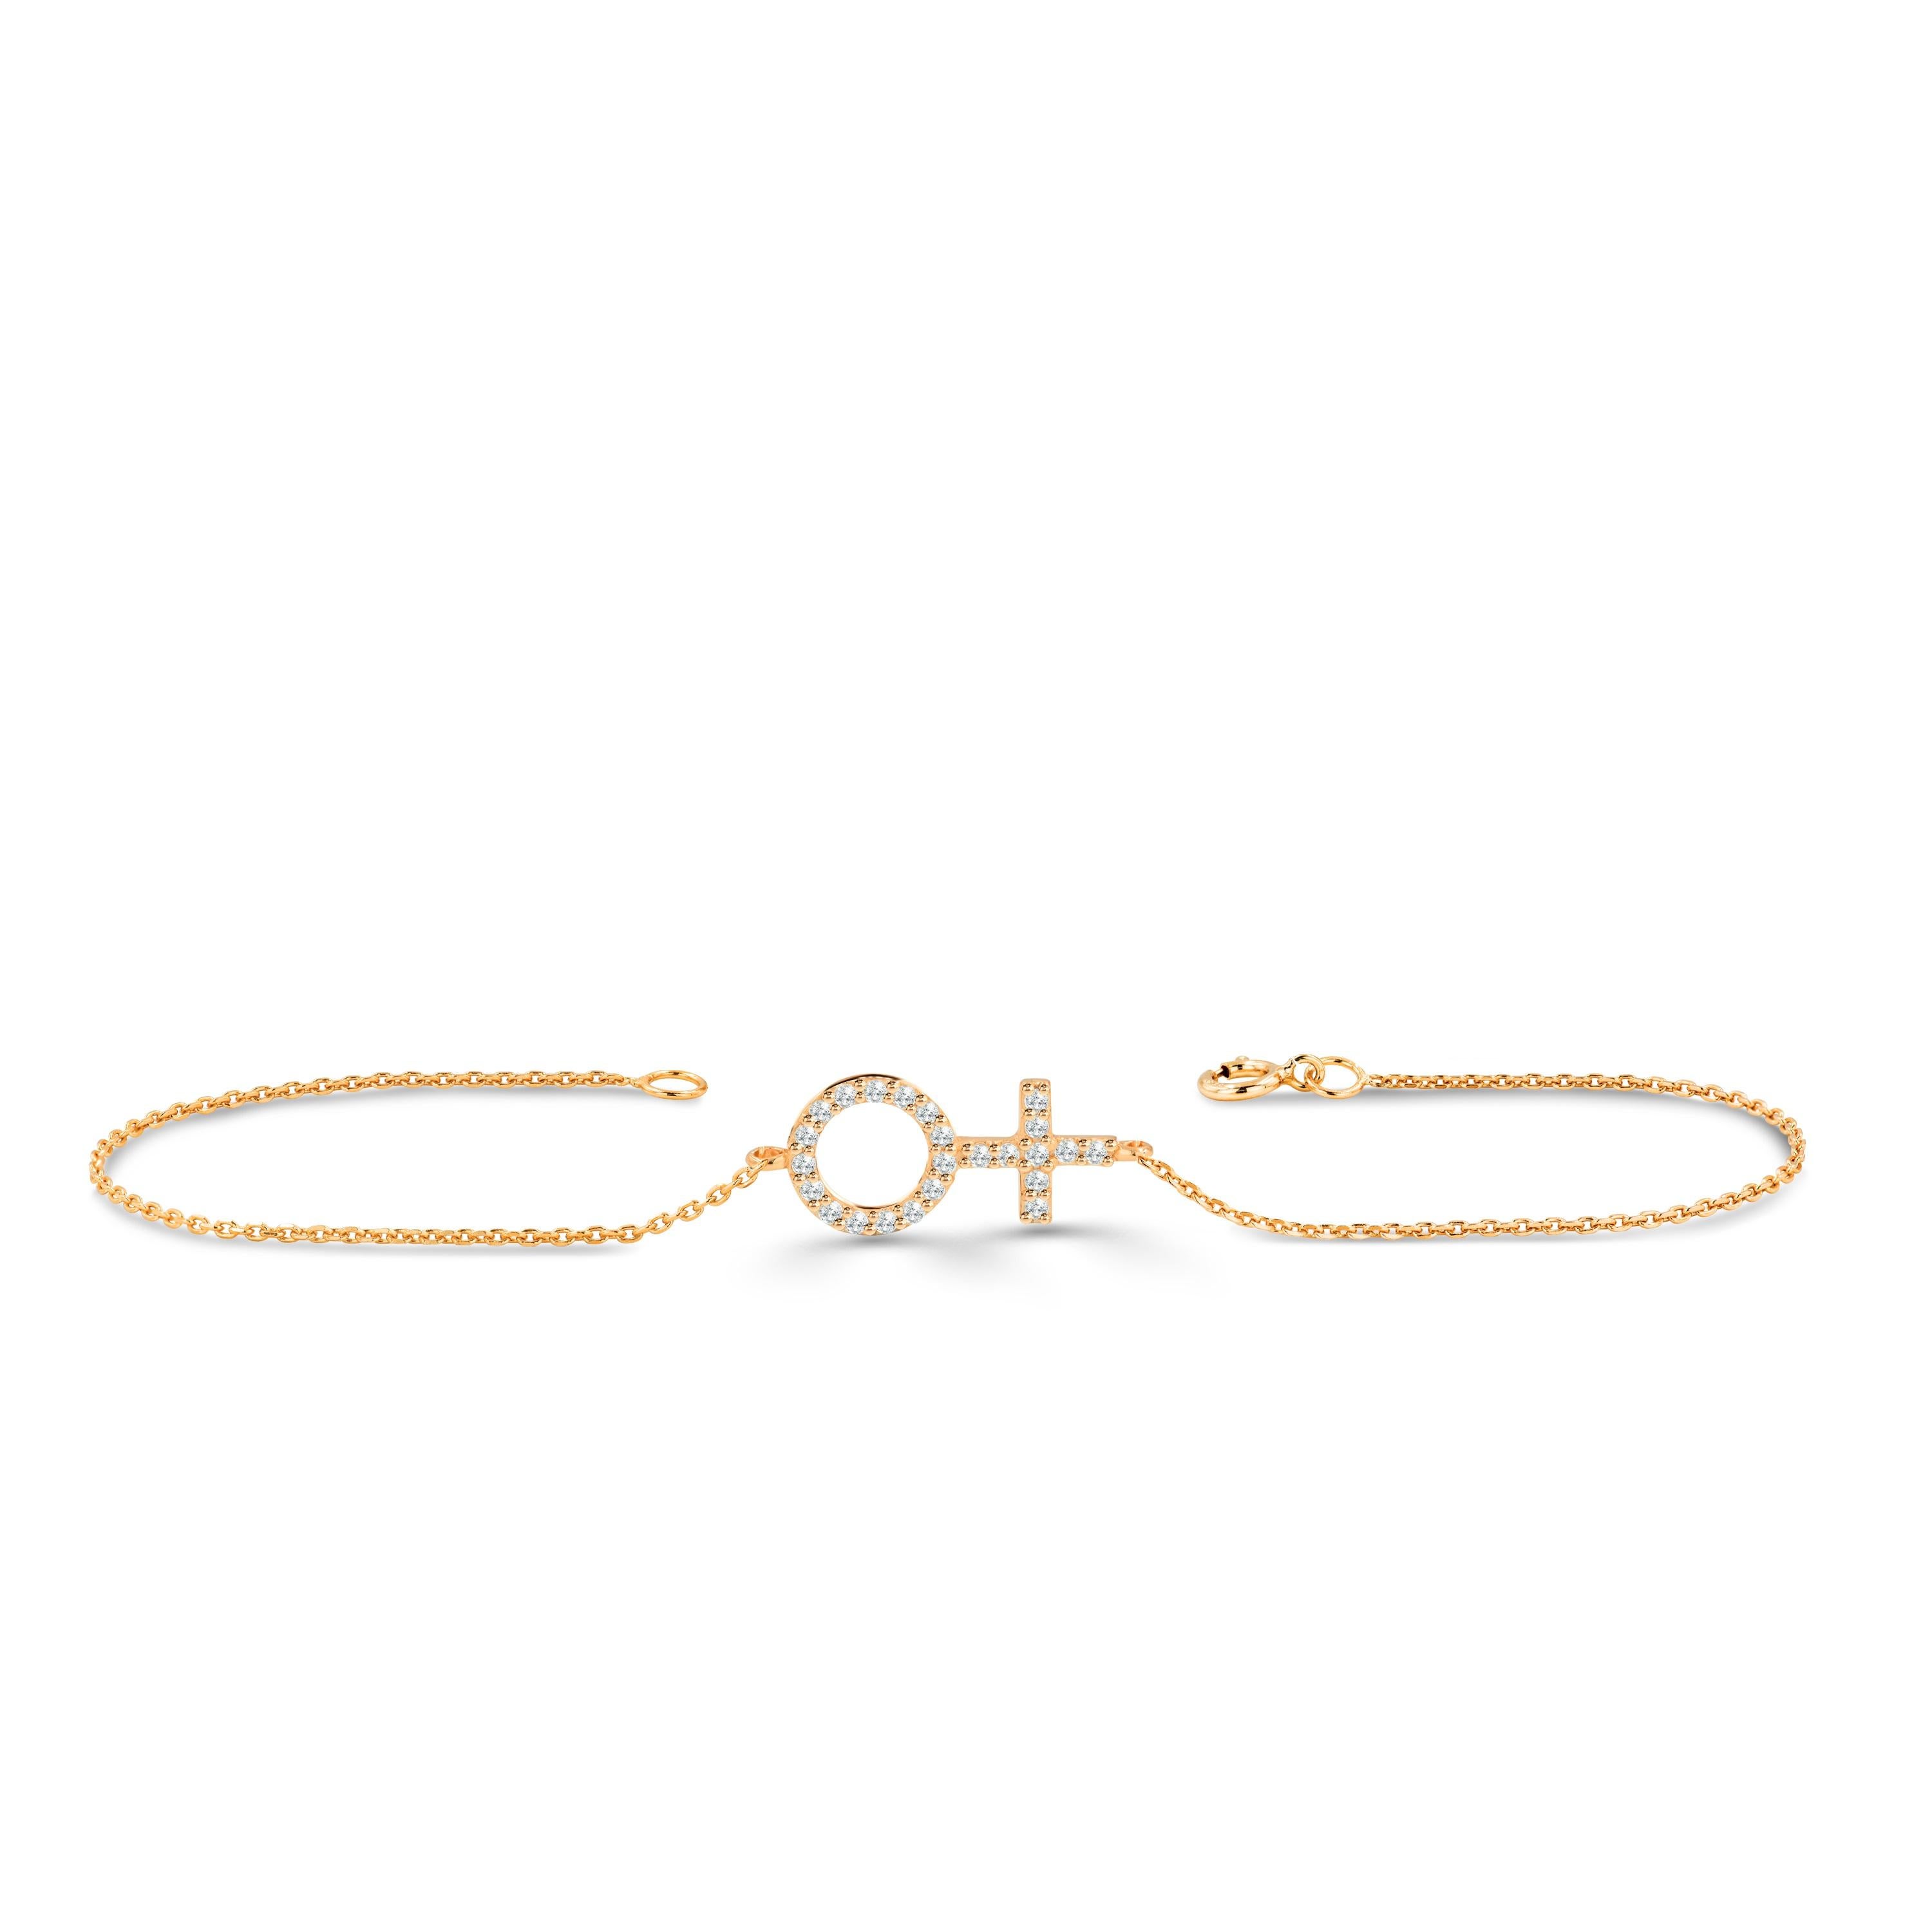 Beau et élégant, ce bracelet symbole féminin est fabriqué en or pur et se compose de diamants véritables et naturels. Les diamants sont sélectionnés à la main par mes soins pour en garantir la qualité. Ce bracelet est soigneusement fabriqué à la